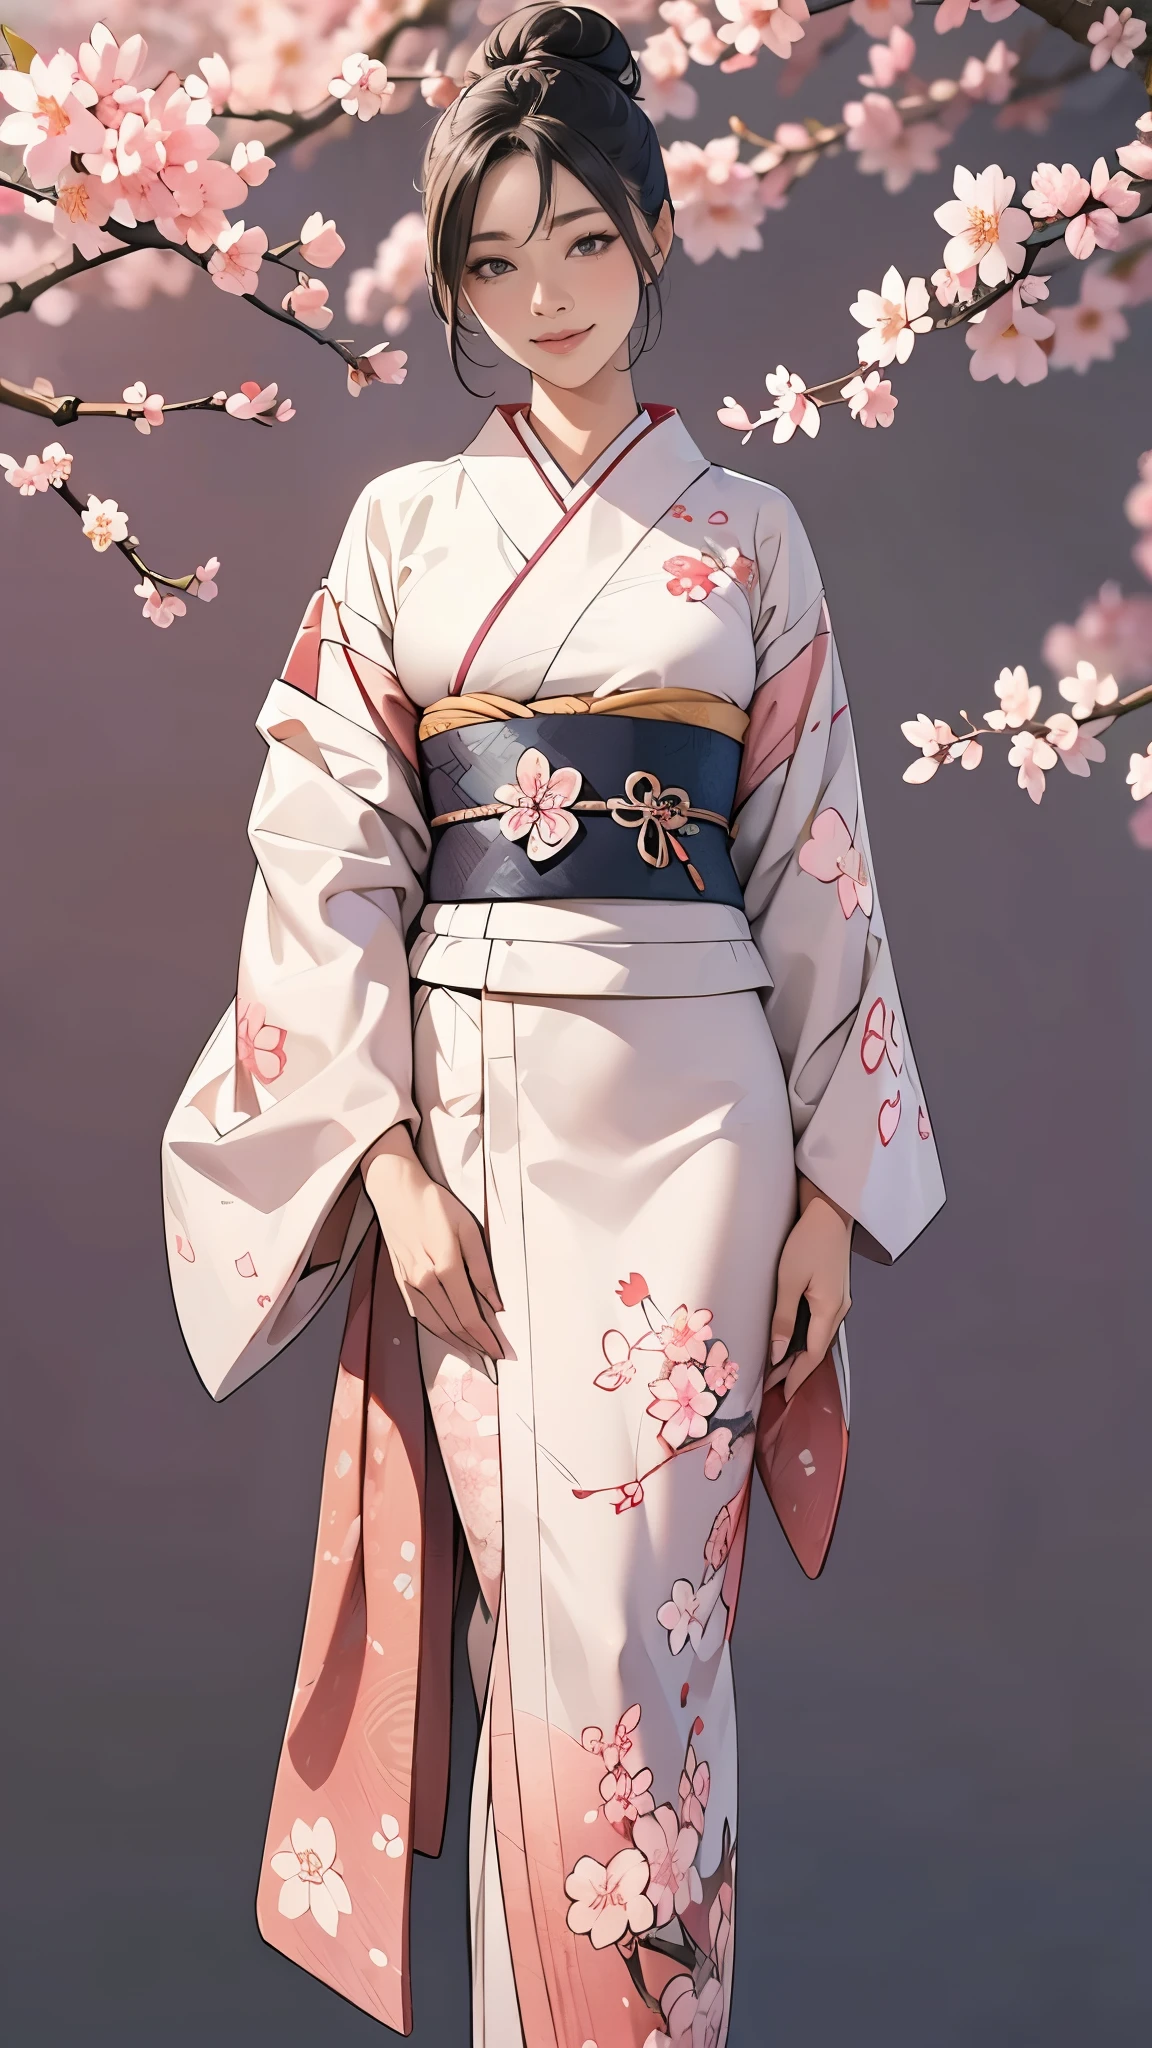 (Obra maestra),(de la máxima calidad),(Muy detallado),(alta resolución),8k,fondo de pantalla,Una mujer,Una mujer está de pie,Elegant,Sesión de fotos con kimonos,(((todo el cuerpo))),(Moño),sonrisa,(Hermoso furisodio con estampado japonés.),(((El fondo es un patrón de flor de cerezo..))),((kimono))